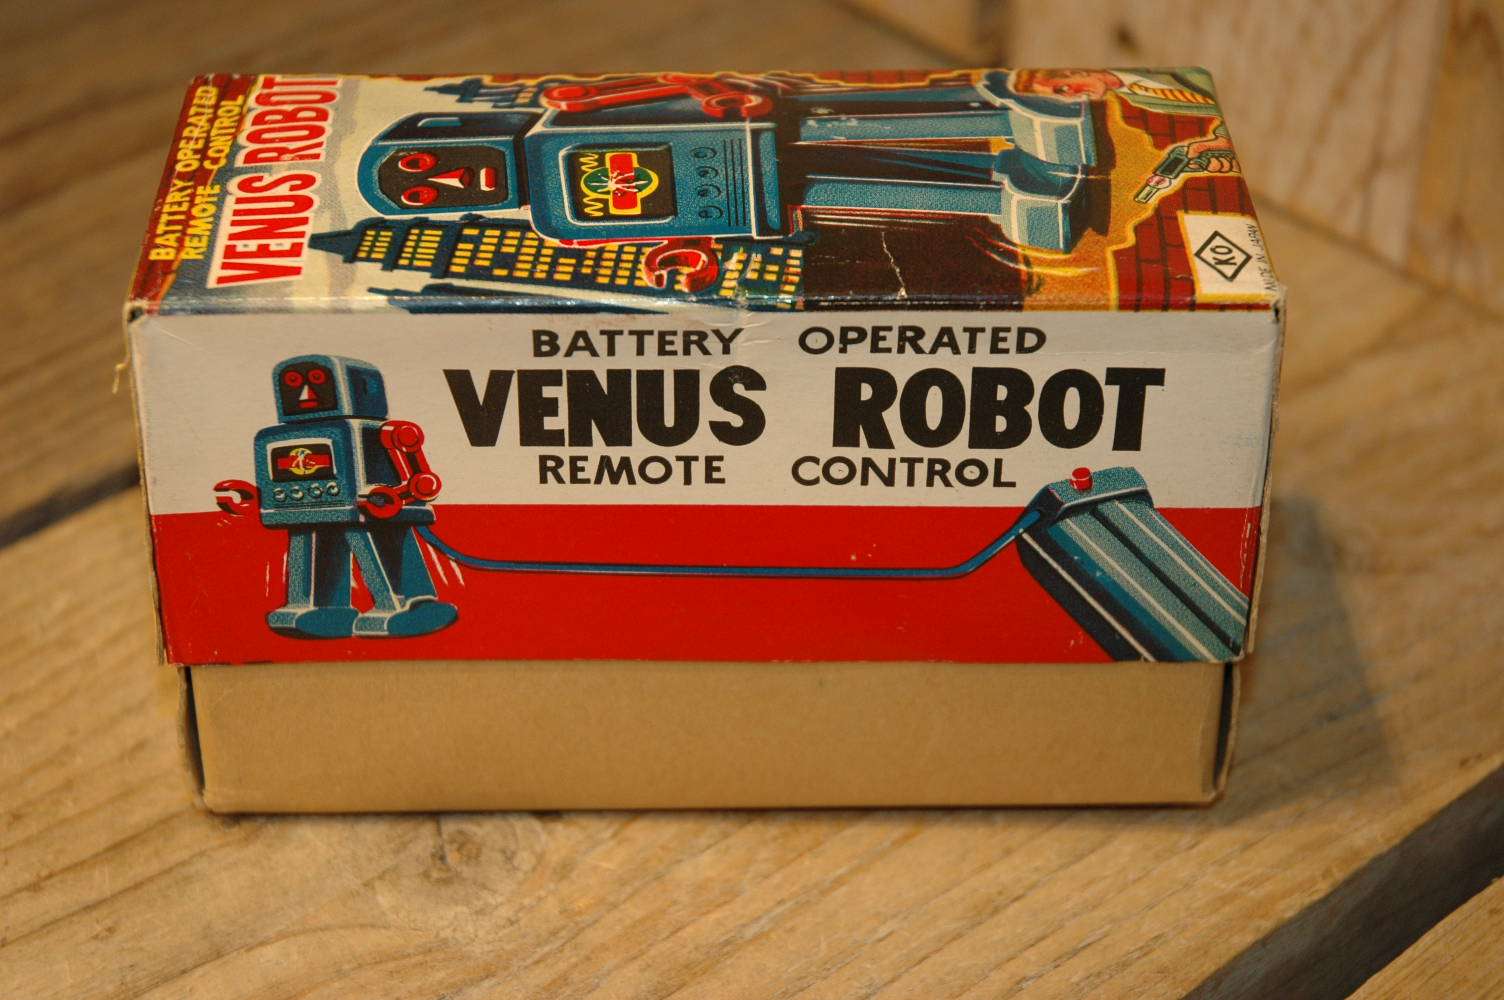 Yoshiya - Venus Robot